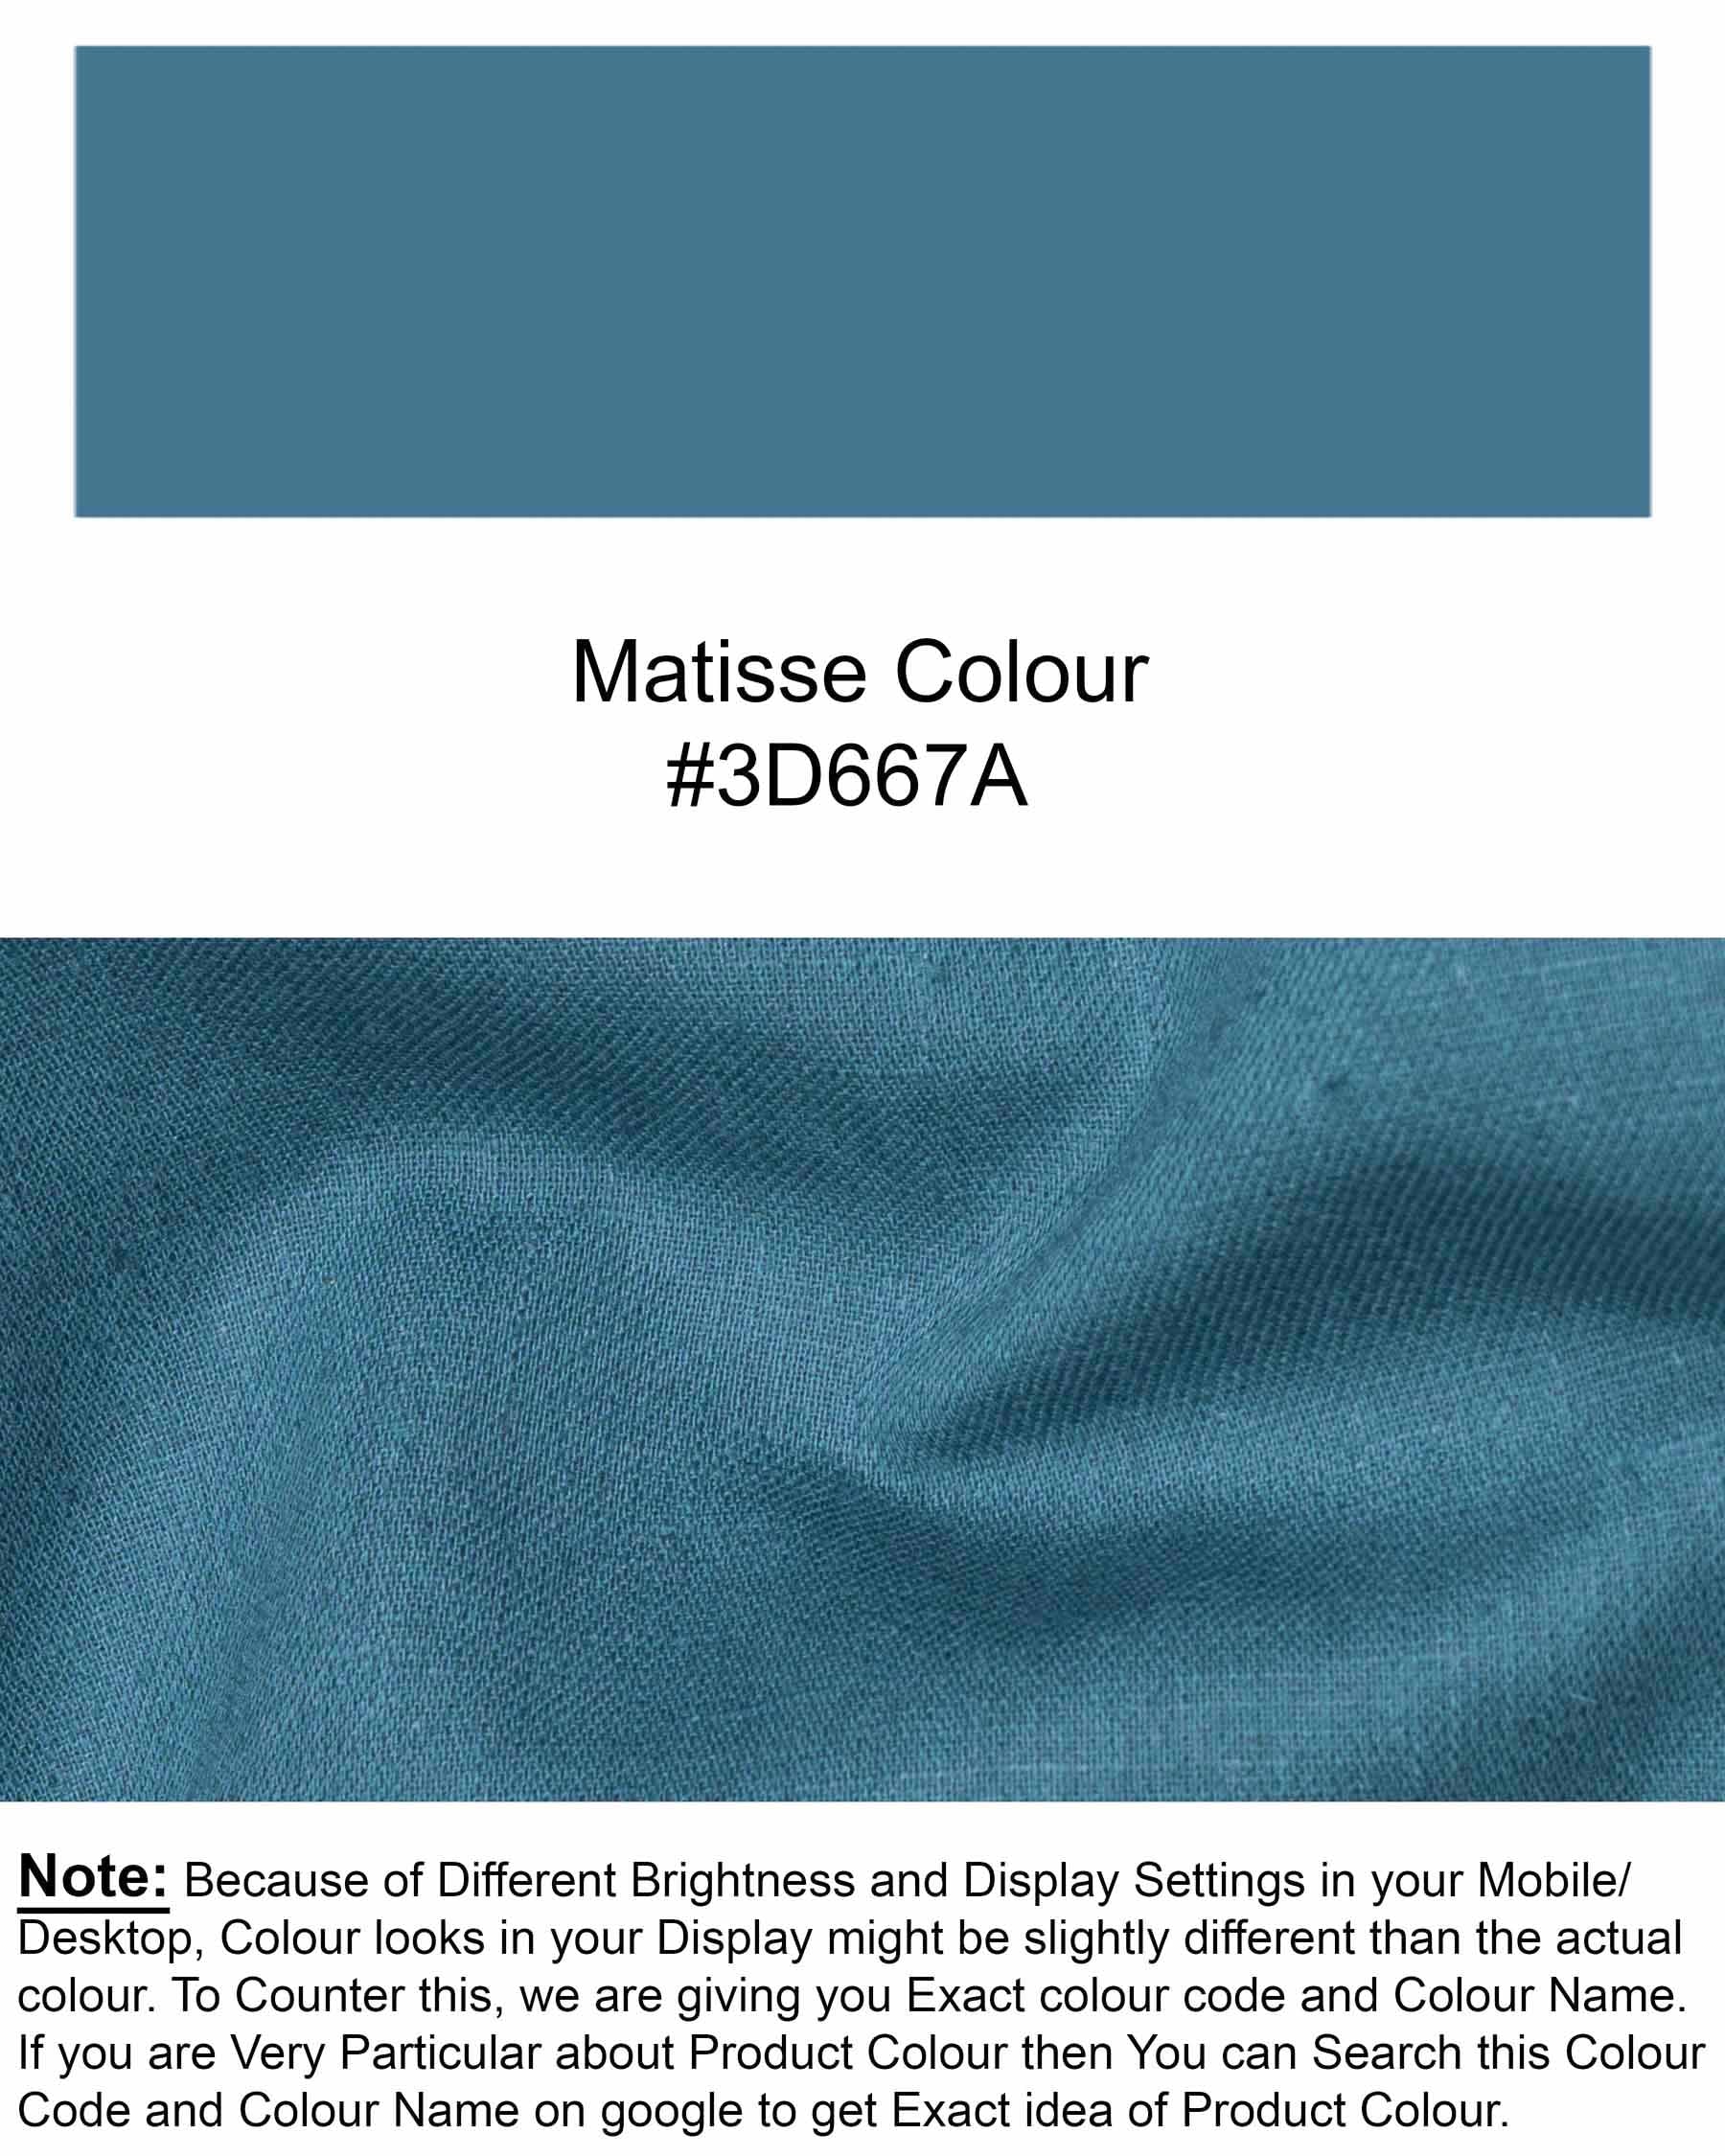 Matisse Blue Luxurious Linen Shirt 6150-BD-38, 6150-BD-H-38, 6150-BD-39, 6150-BD-H-39, 6150-BD-40, 6150-BD-H-40, 6150-BD-42, 6150-BD-H-42, 6150-BD-44, 6150-BD-H-44, 6150-BD-46, 6150-BD-H-46, 6150-BD-48, 6150-BD-H-48, 6150-BD-50, 6150-BD-H-50, 6150-BD-52, 6150-BD-H-52